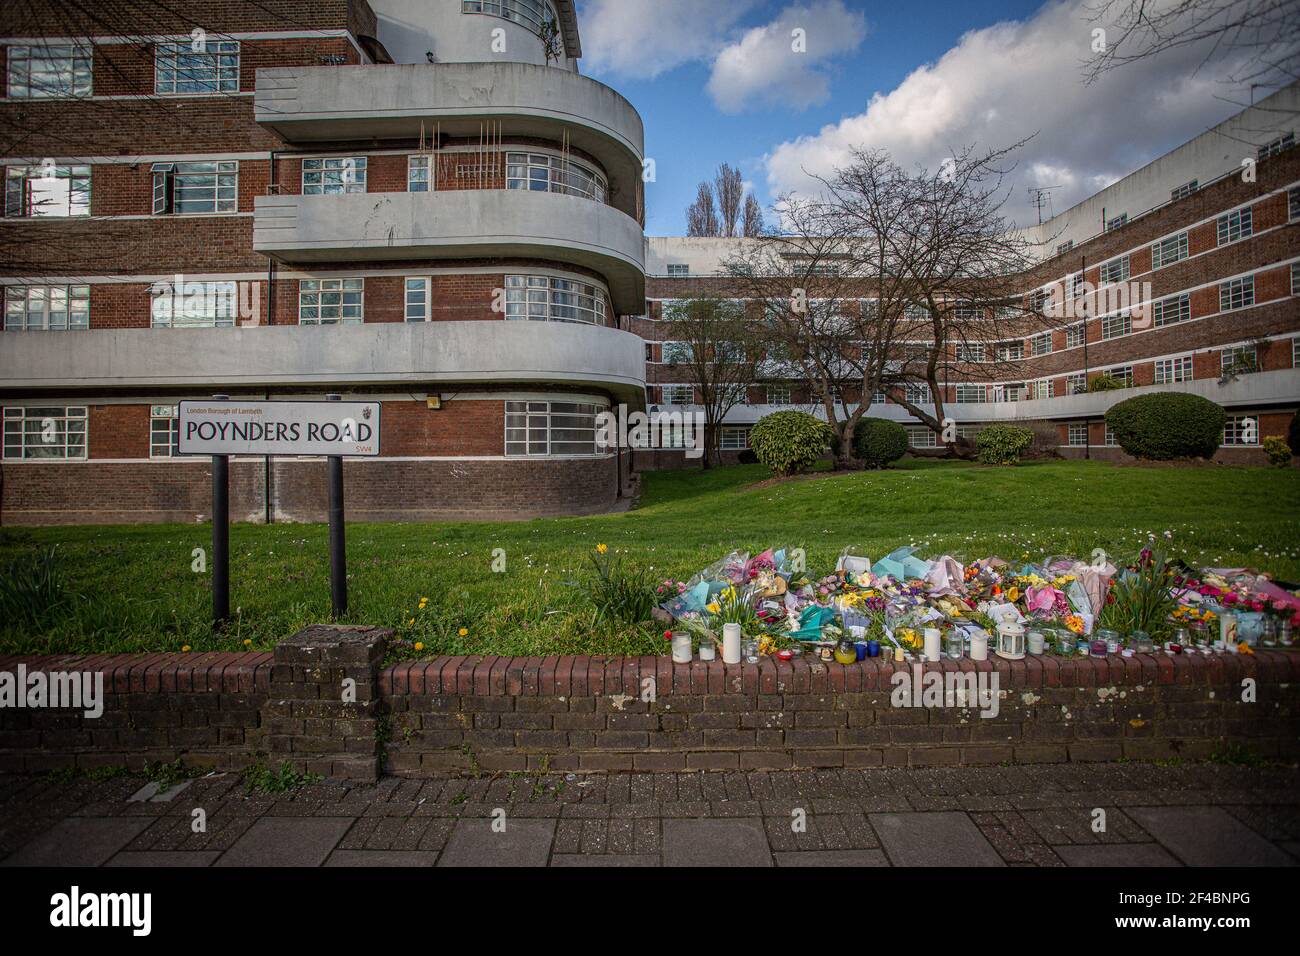 LONDRES, INGLATERRA - MARZO 19: Signo y Flores en memoria de Sarah Everard a lo largo de la carretera Poynders A205, en el cruce con Cavendish Road en Clapham, Foto de stock